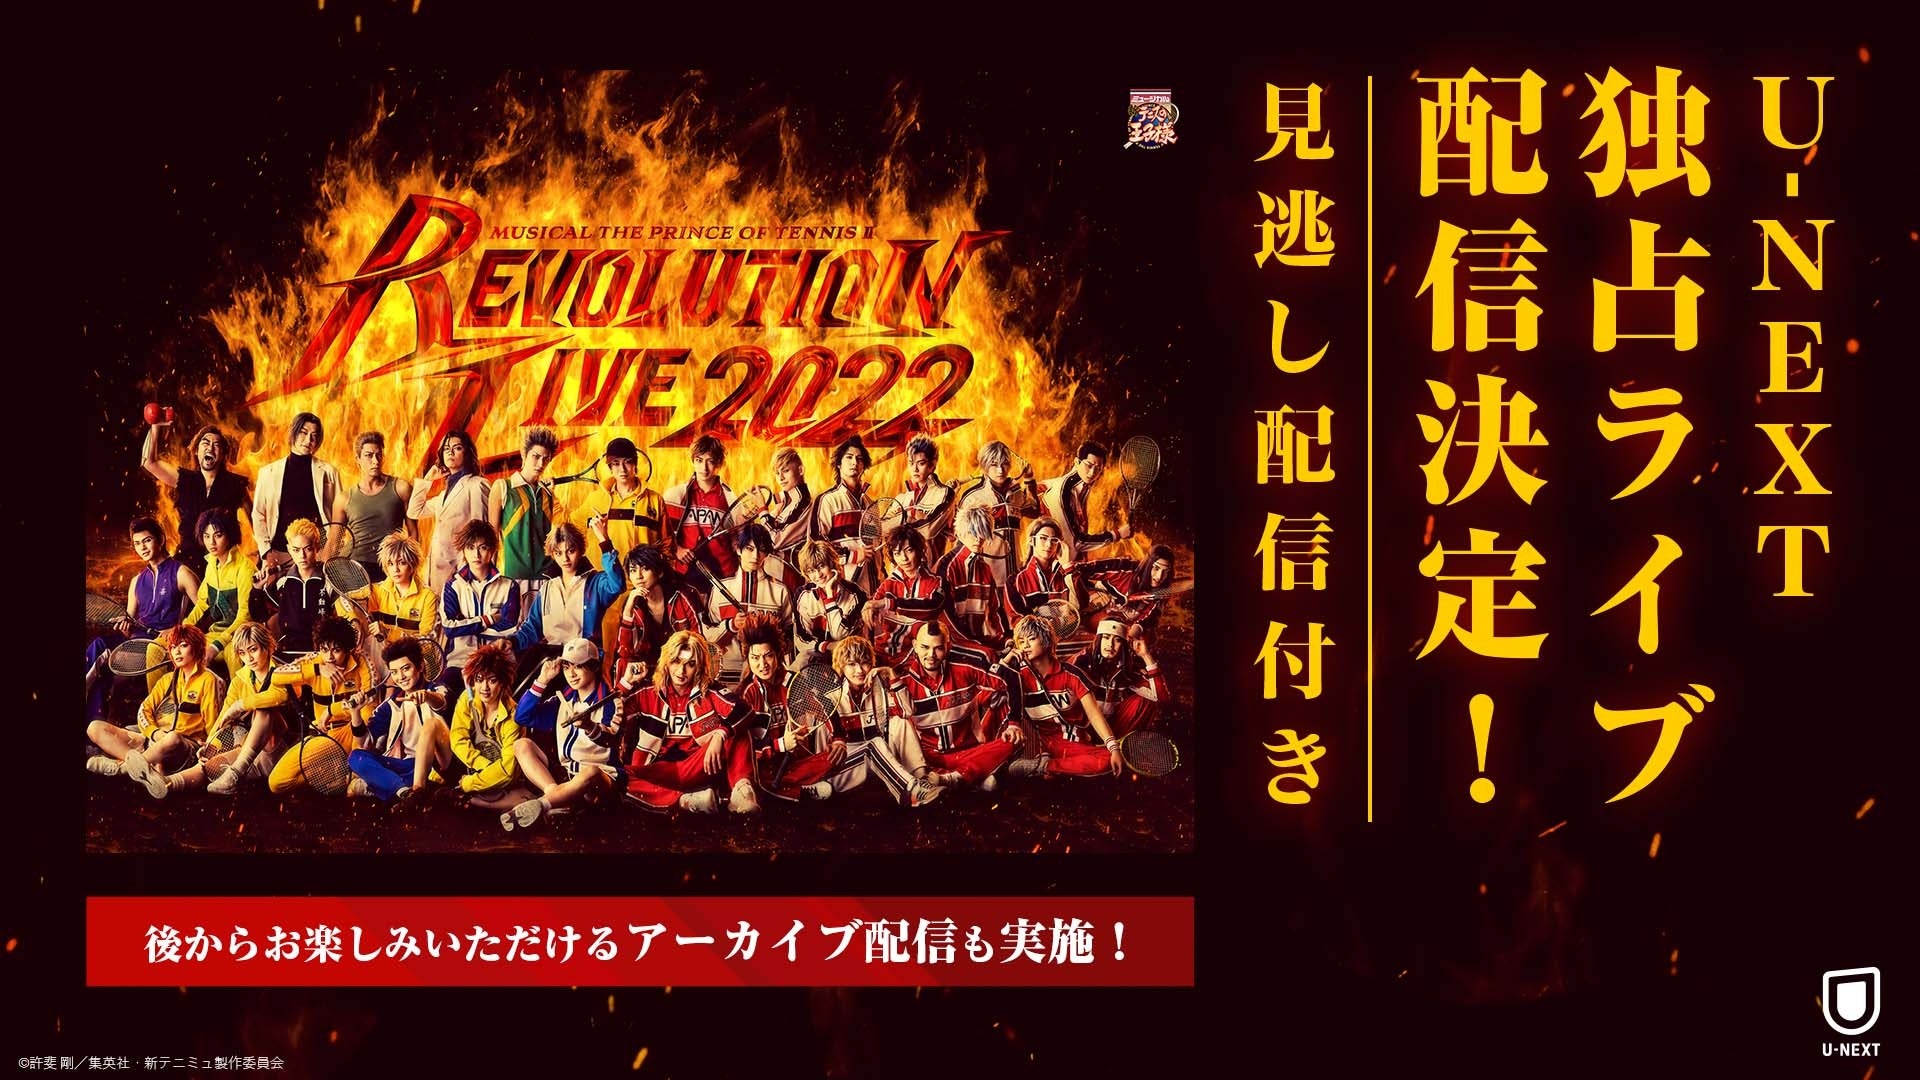 「ミュージカル『新テニスの王子様』Revolution Live 2022」をU-NEXT独占でライブ配信決定！アーカイブ配信も実施に